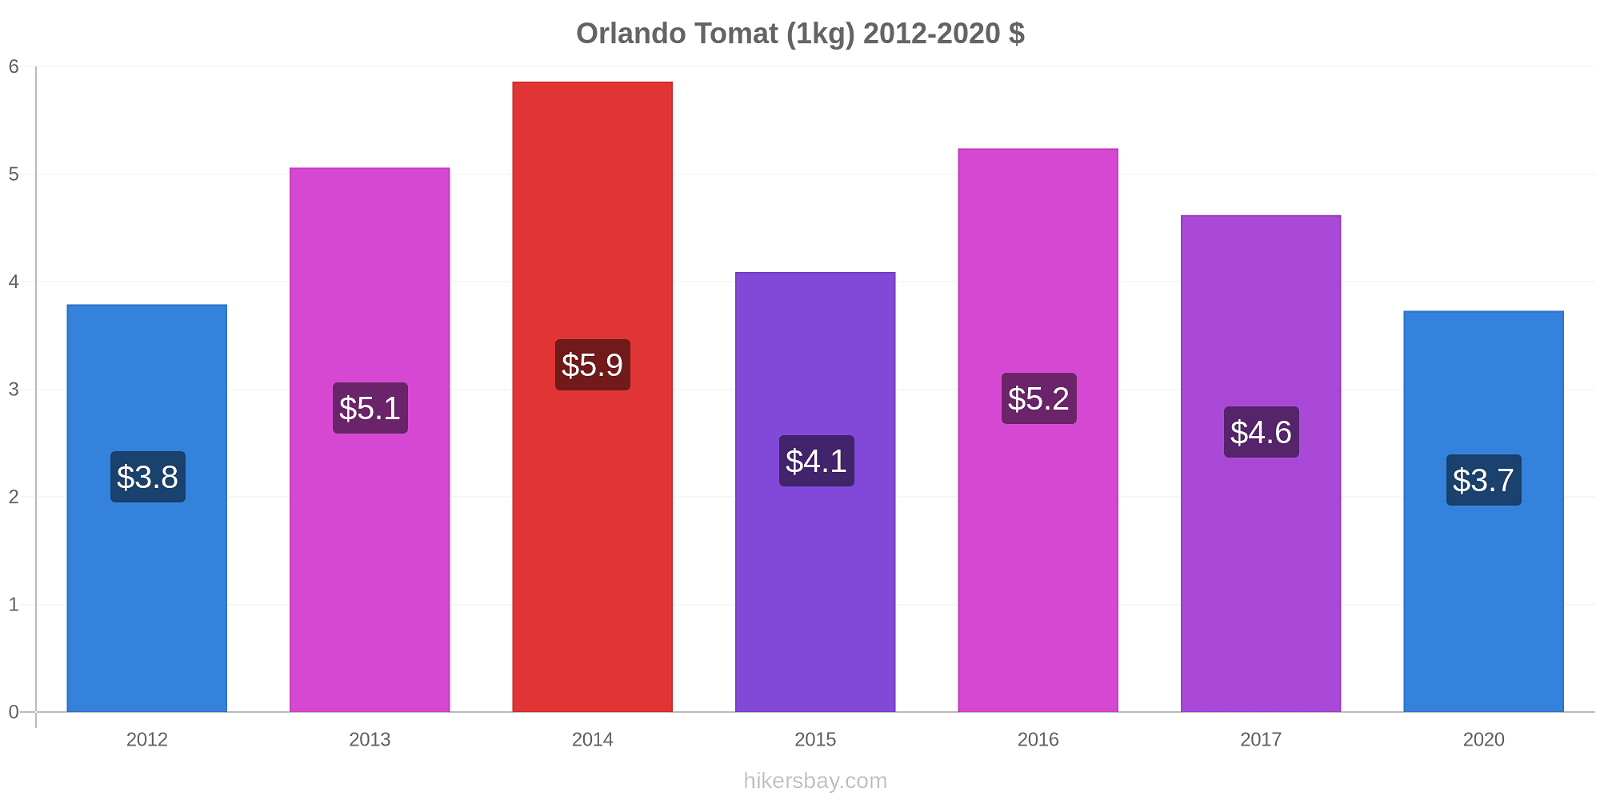 Orlando prisændringer Tomat (1kg) hikersbay.com